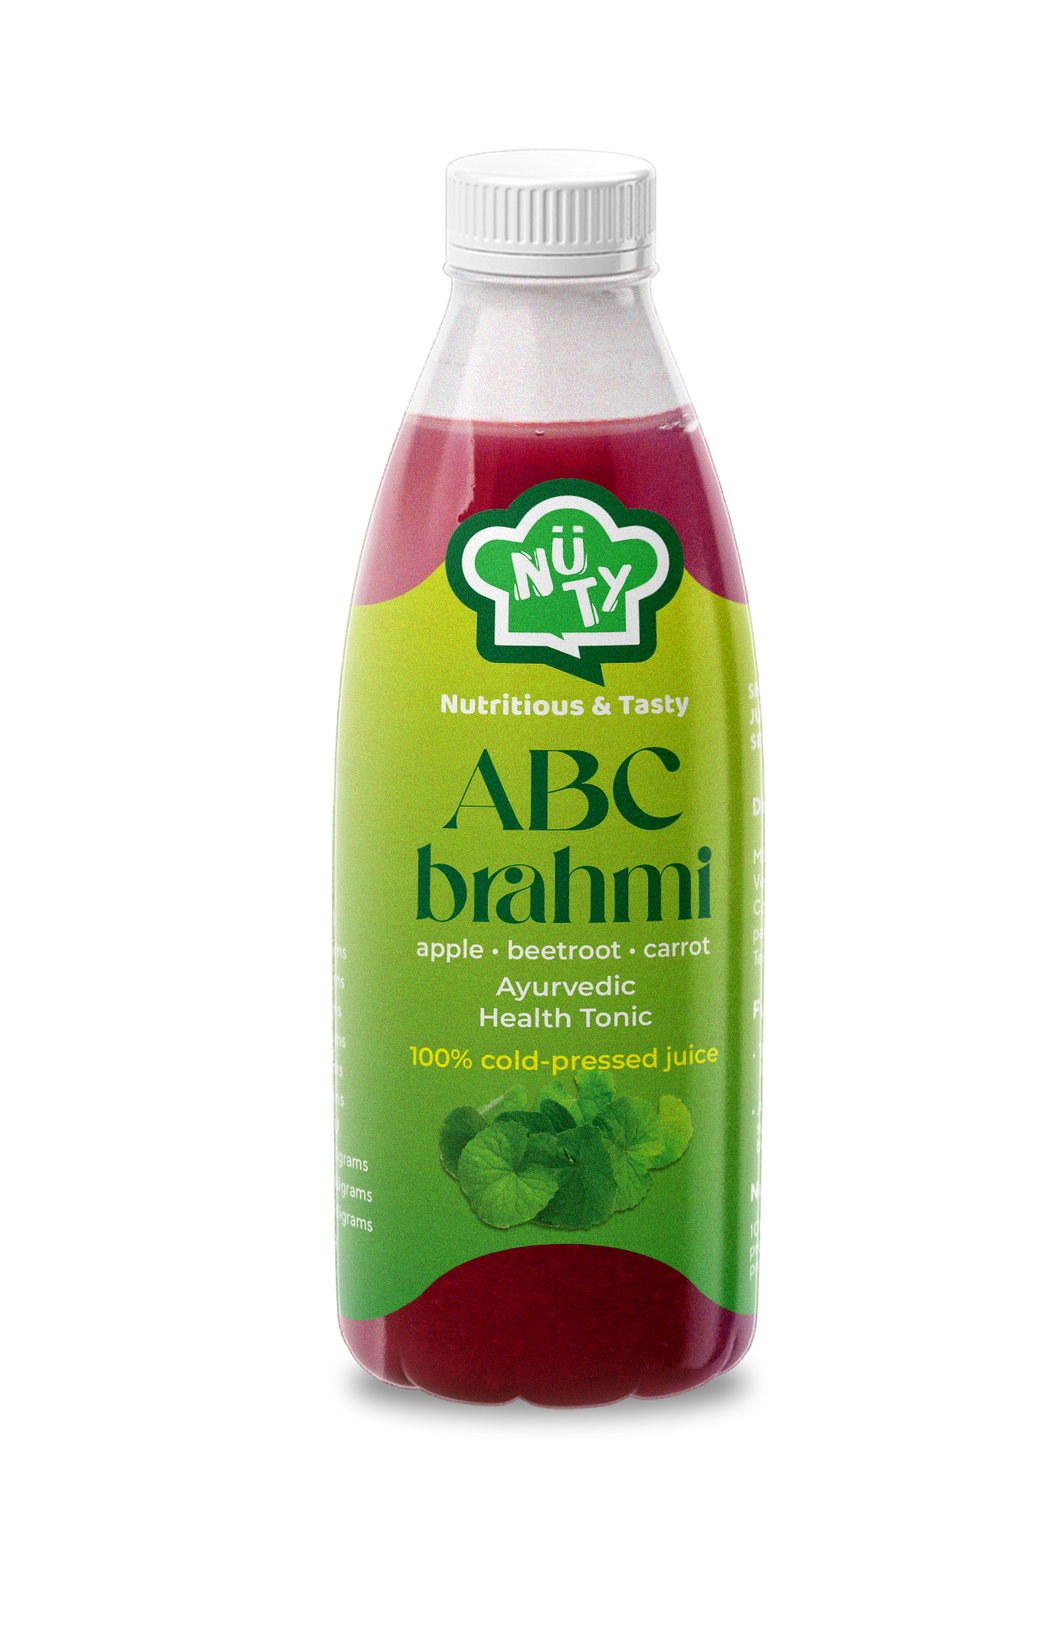 ABC - Brahmi